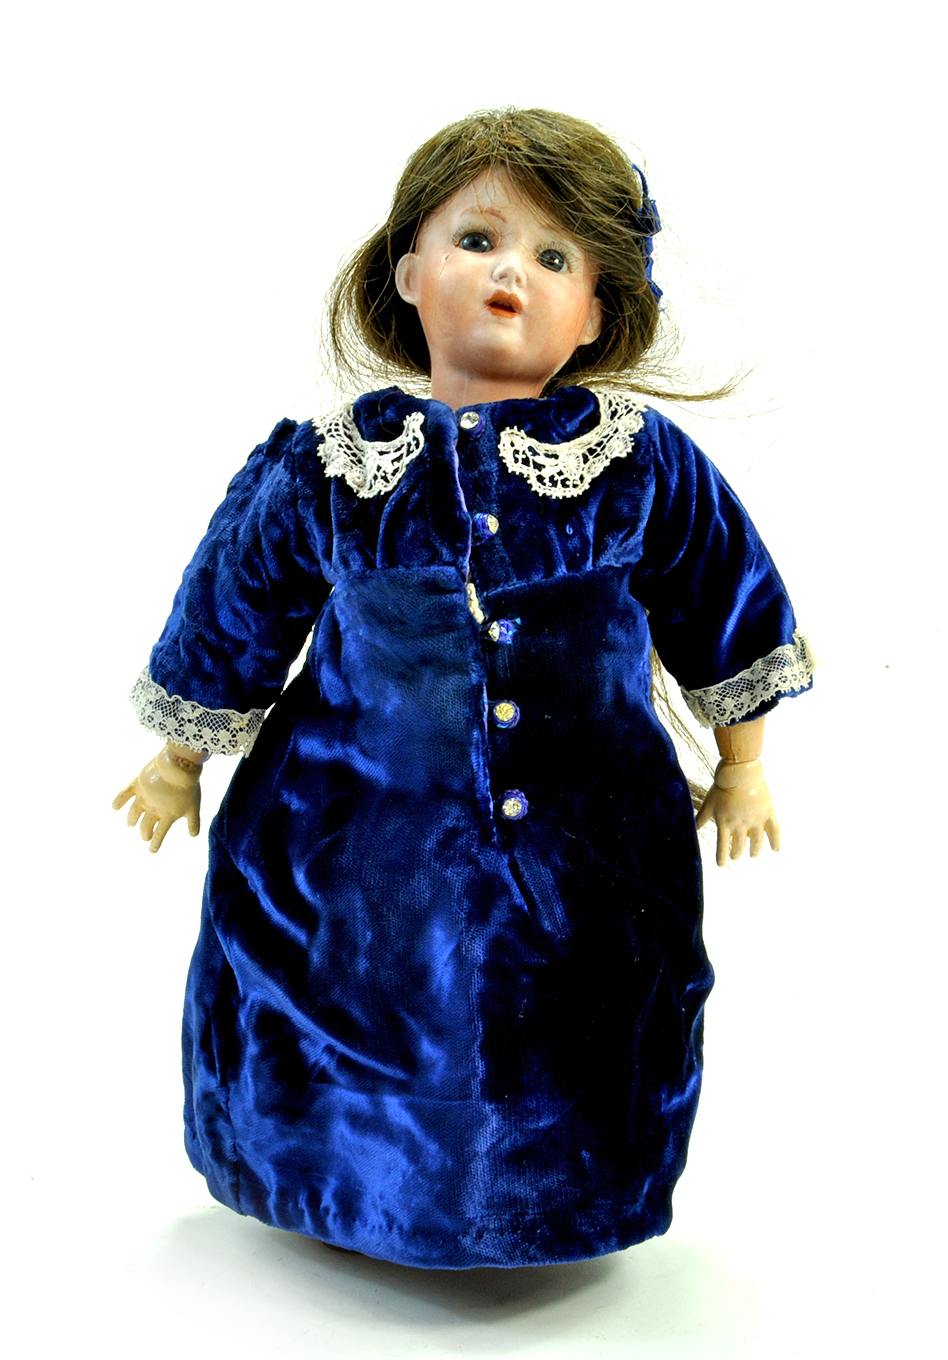 A 12” 1900’s Arthur Schoenau & Hoffmeister Doll. Markings on head "S, PB in star, H, 1909, 7/0,